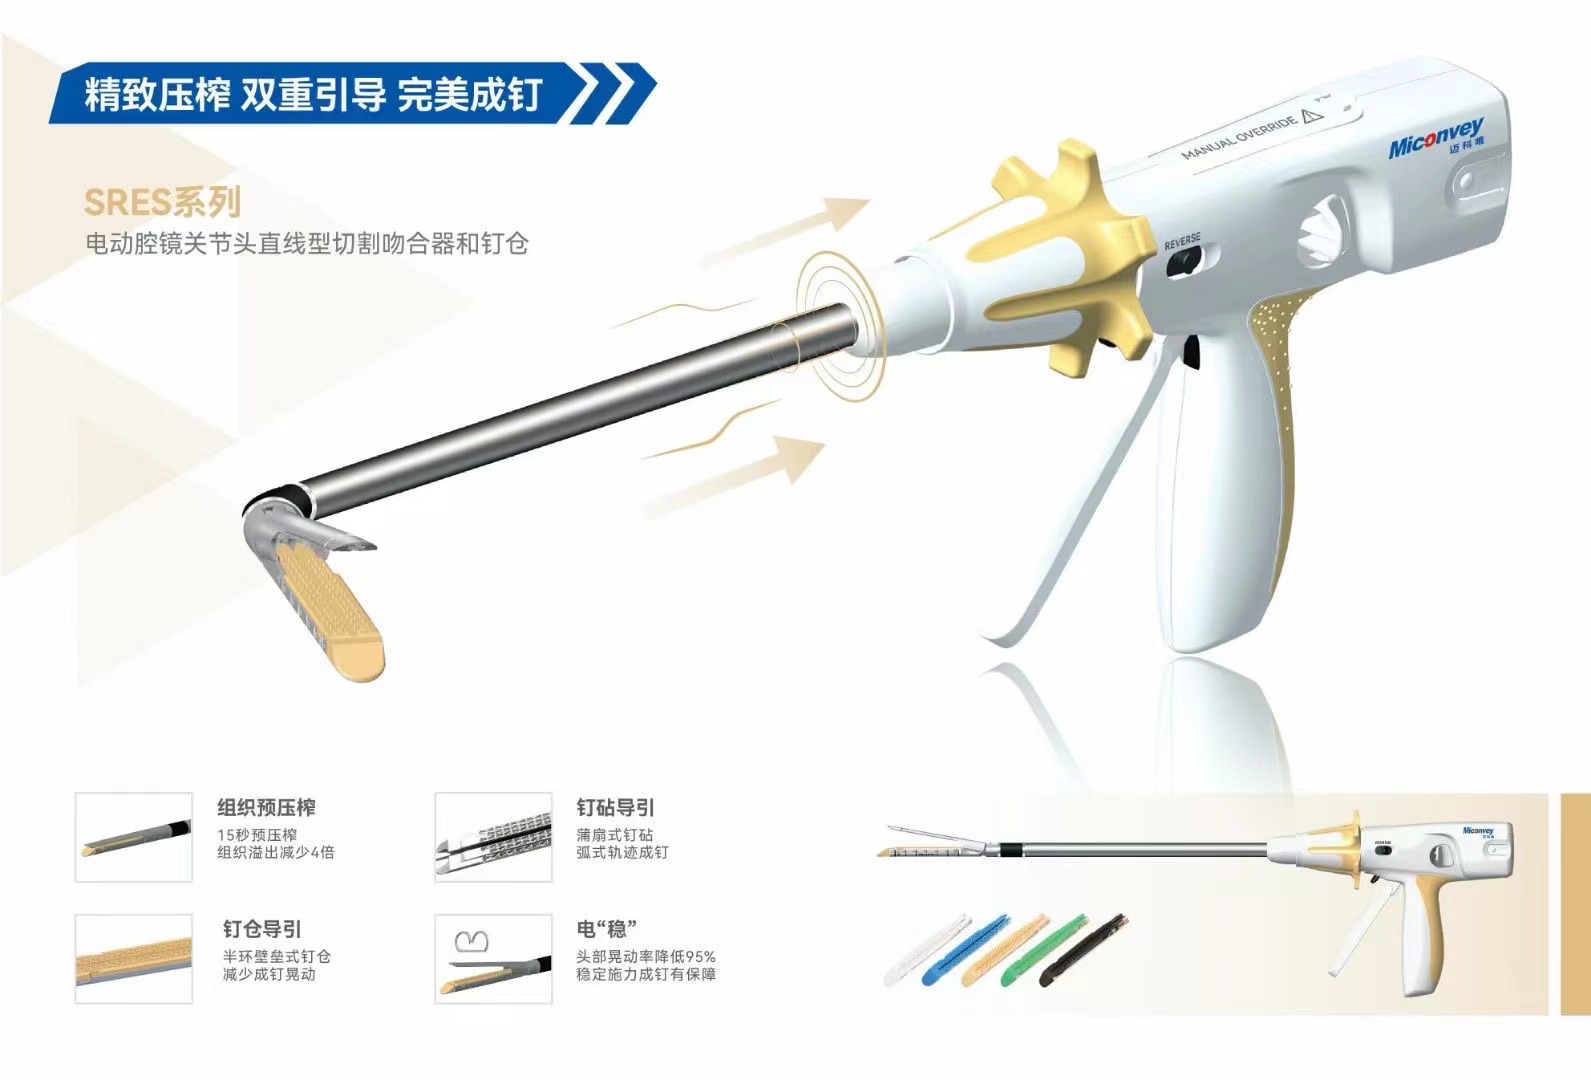 重庆迈柯唯一次性使用腔镜直线切割吻合器及一次性钉匣melc